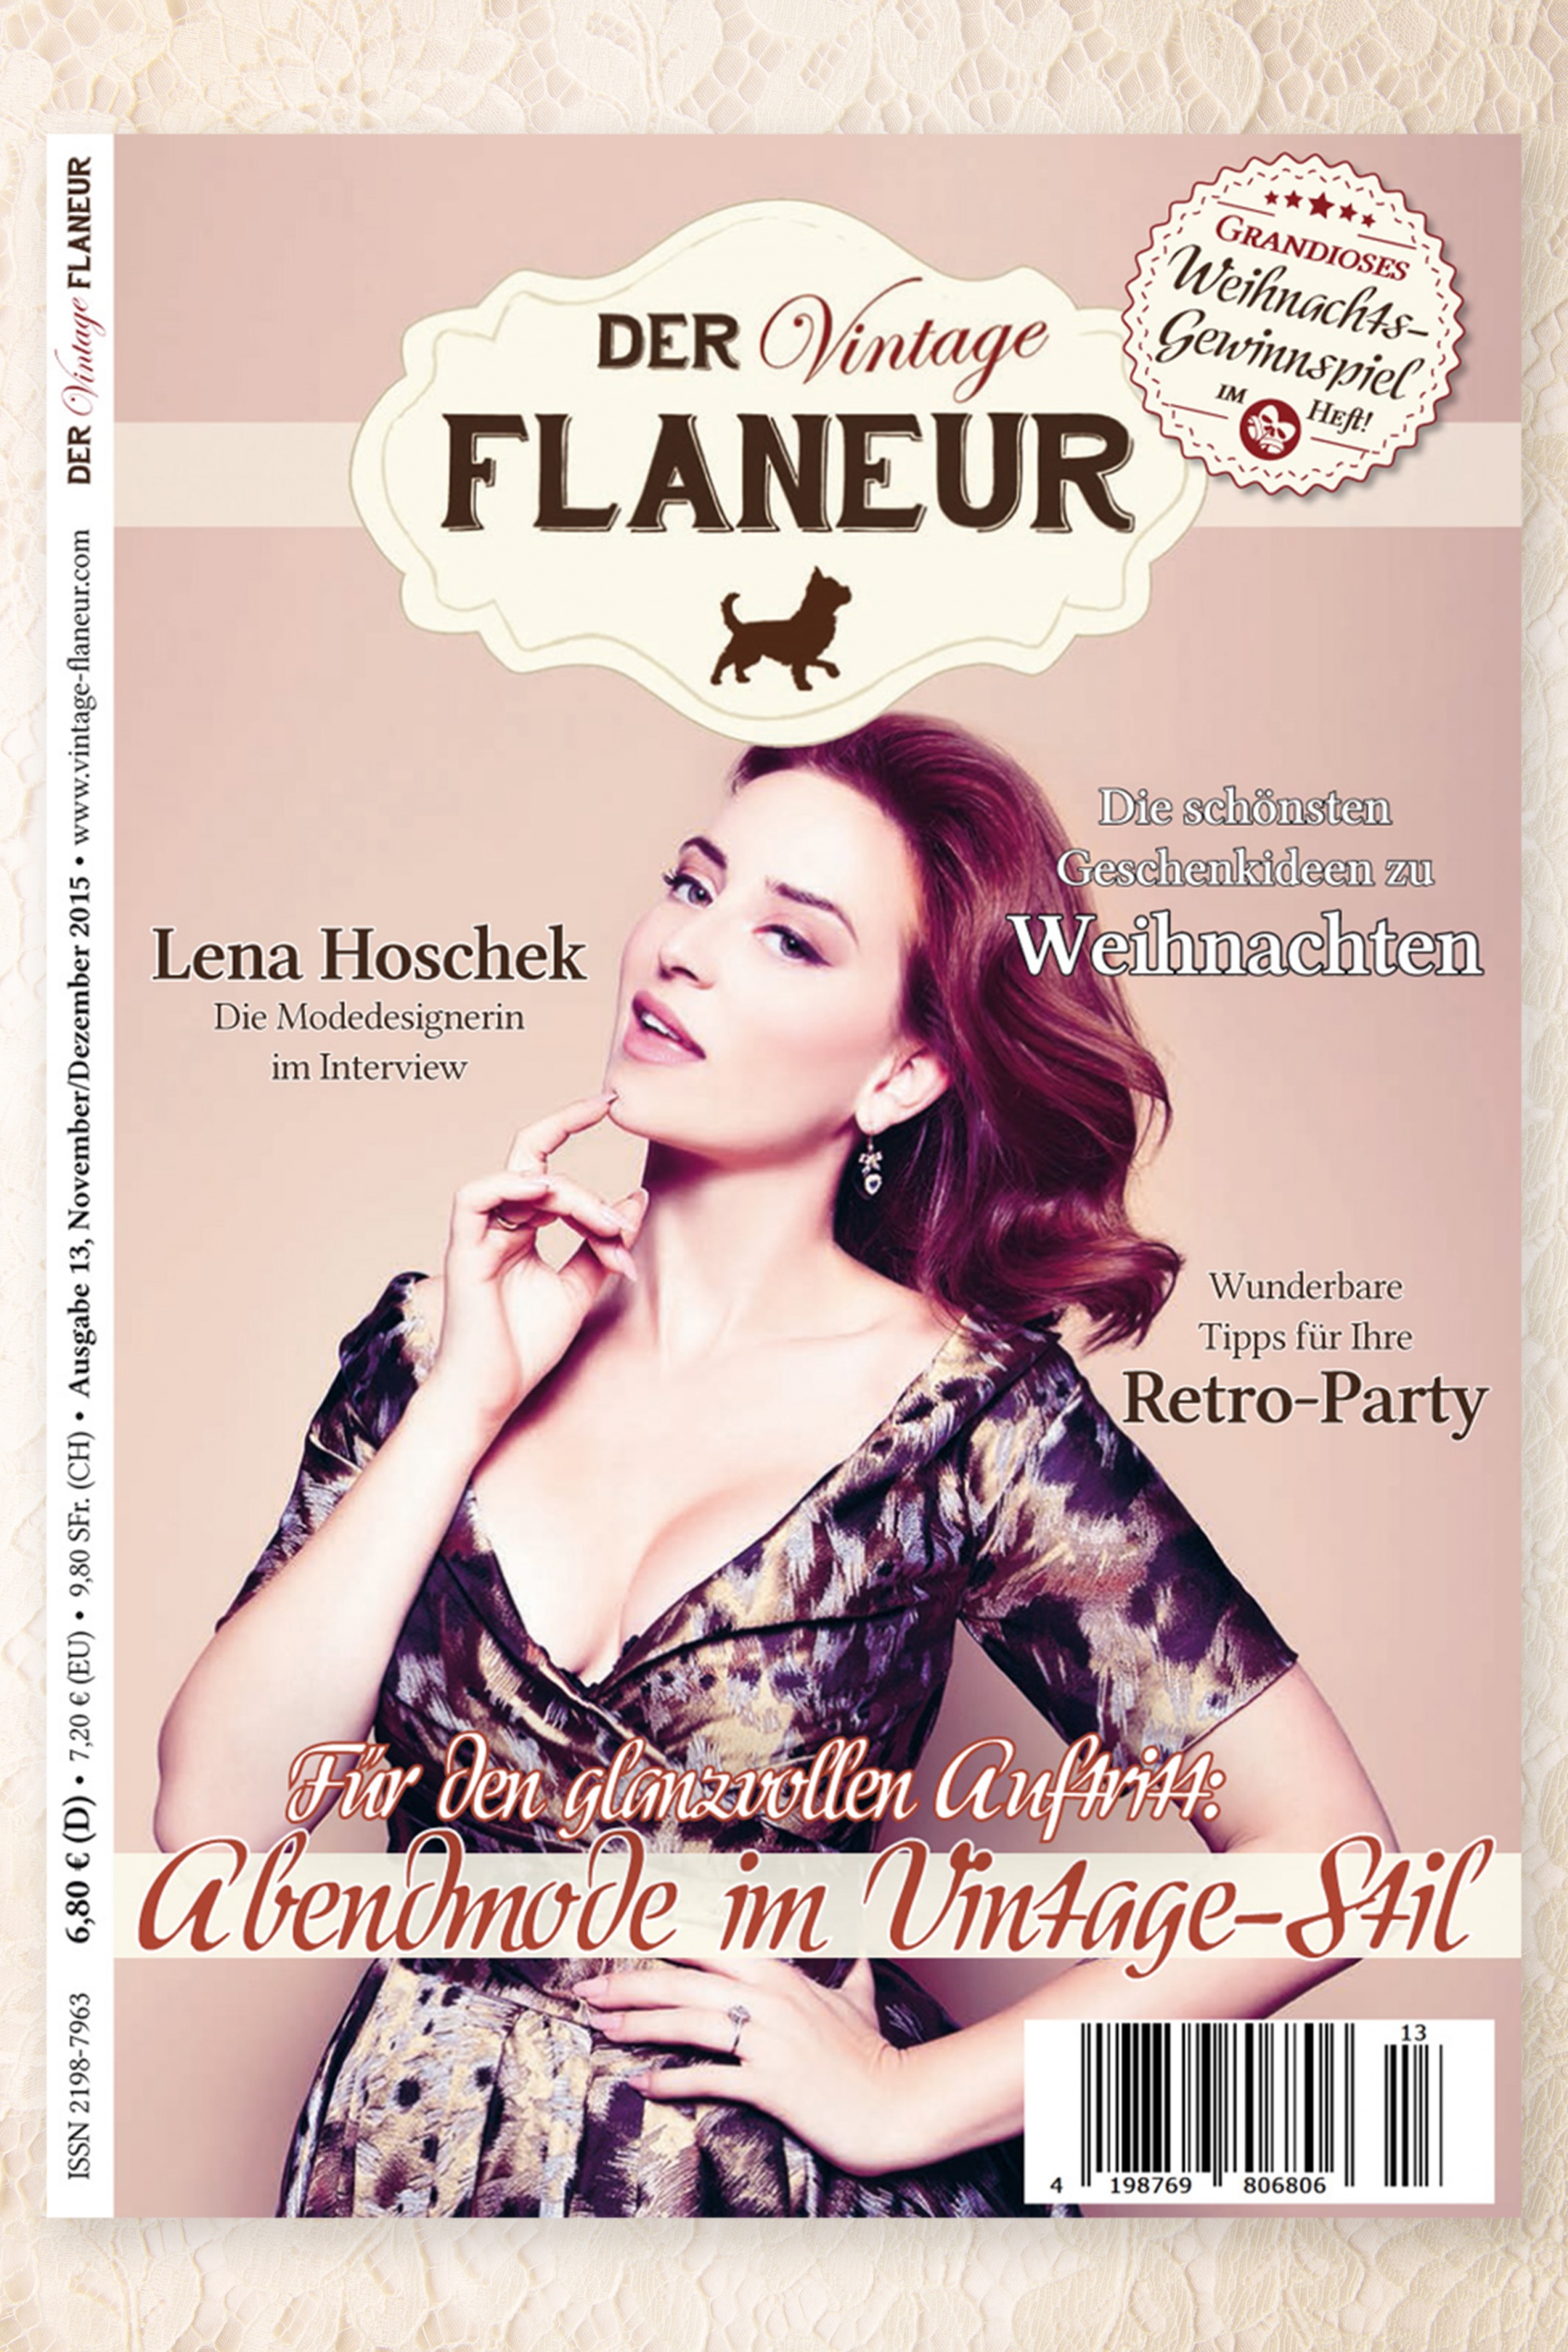 Der Vintage Flaneur - Der Vintage Flaneur Uitgegeven op 13, 2015